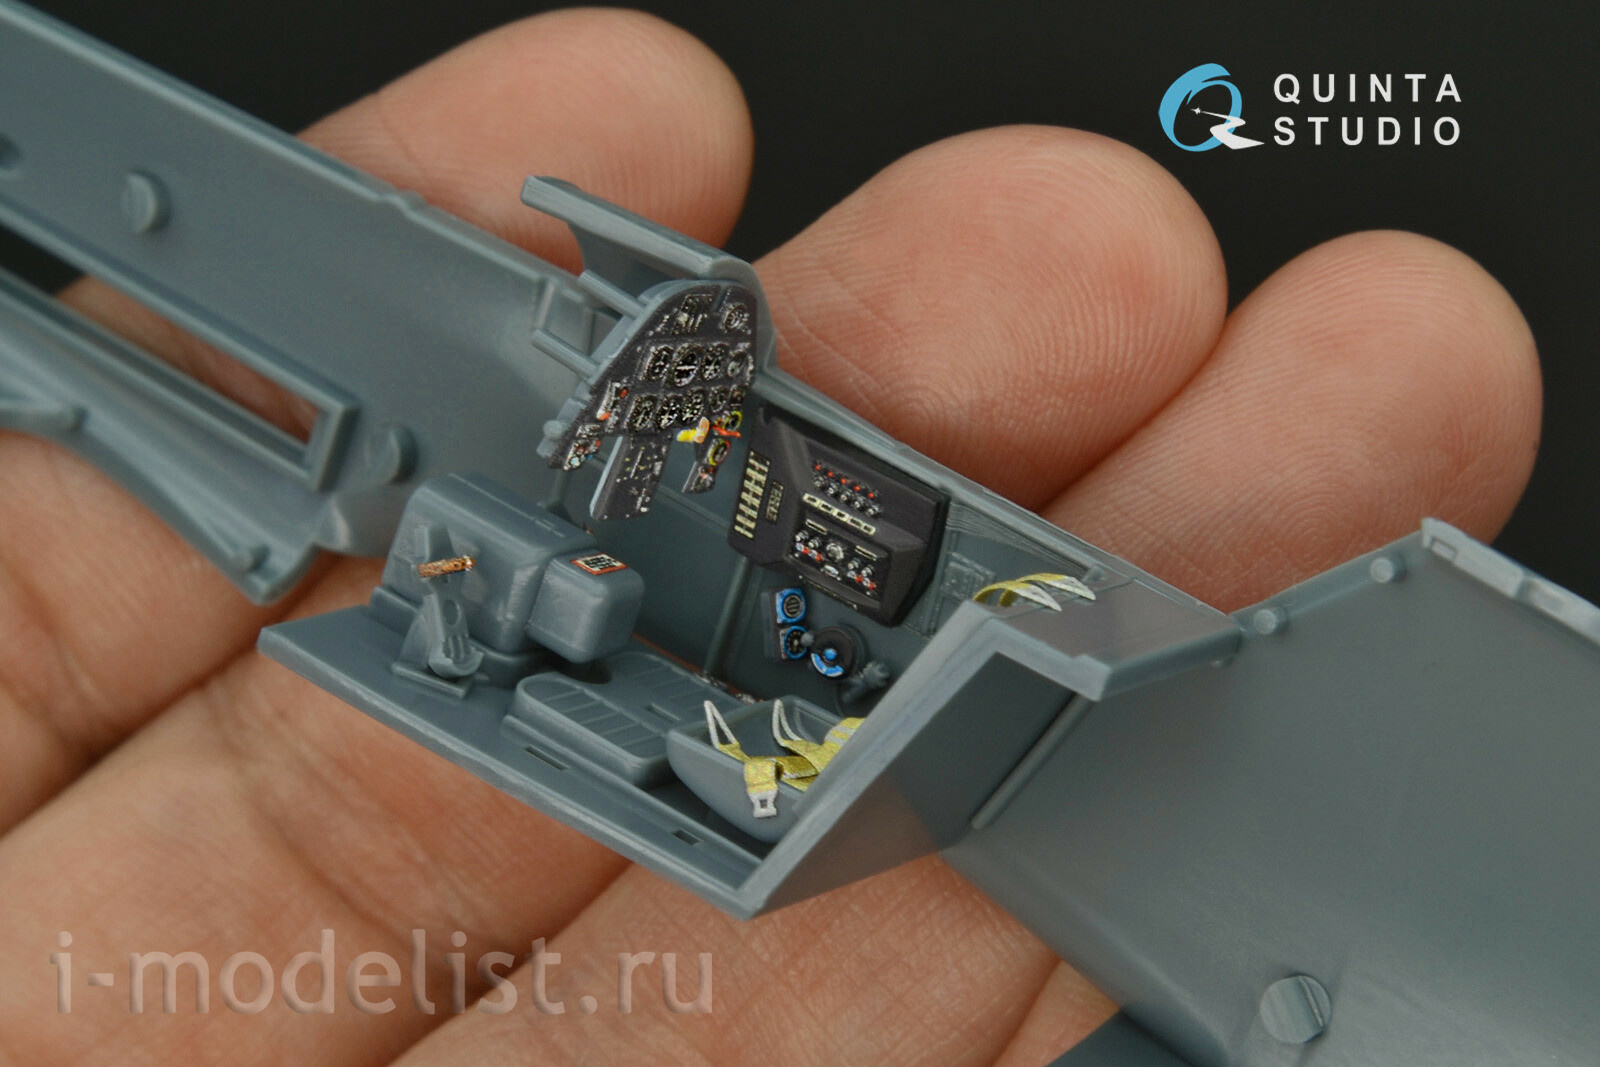 QD48161 Quinta Studio 1/48 3D Декаль интерьера кабины Bf 109G-10 (Eduard)